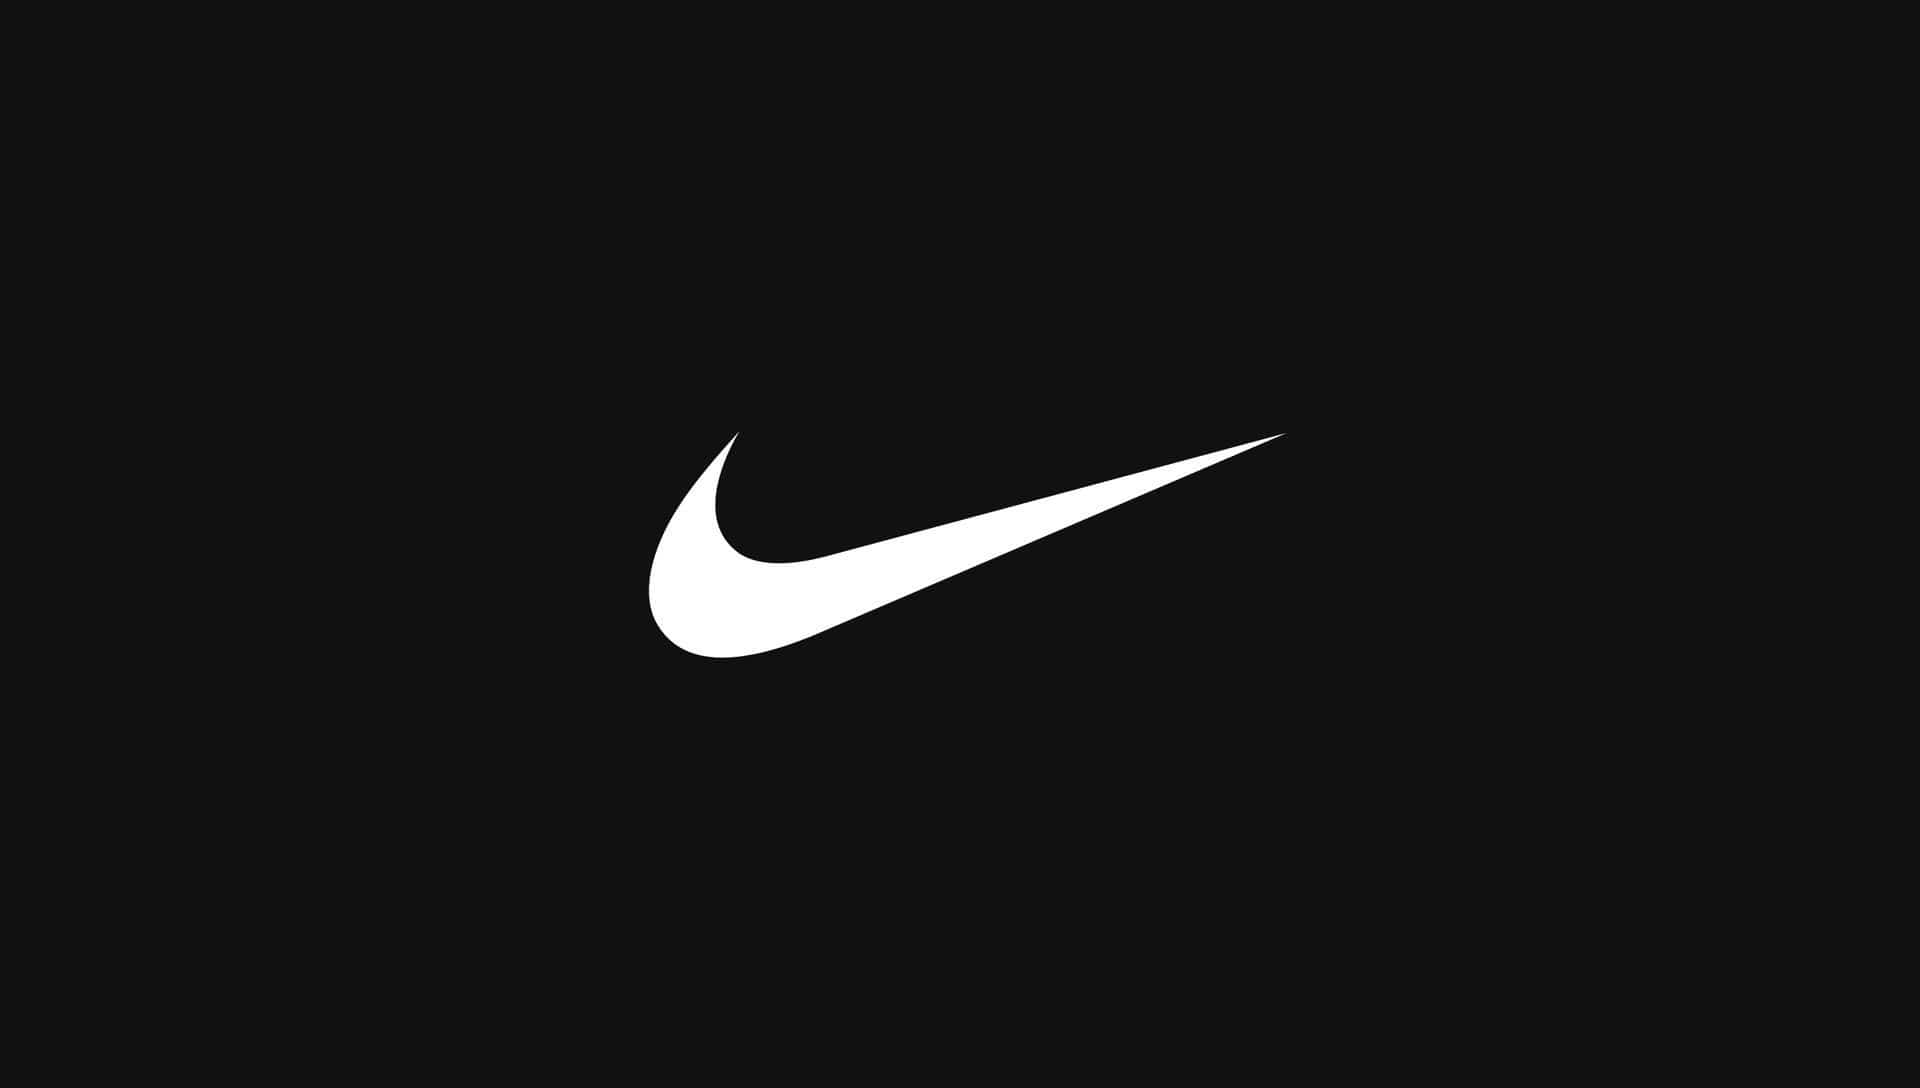 celestial Inducir Canal Nike Marketing: todo lo que necesitas saber - Comunicare